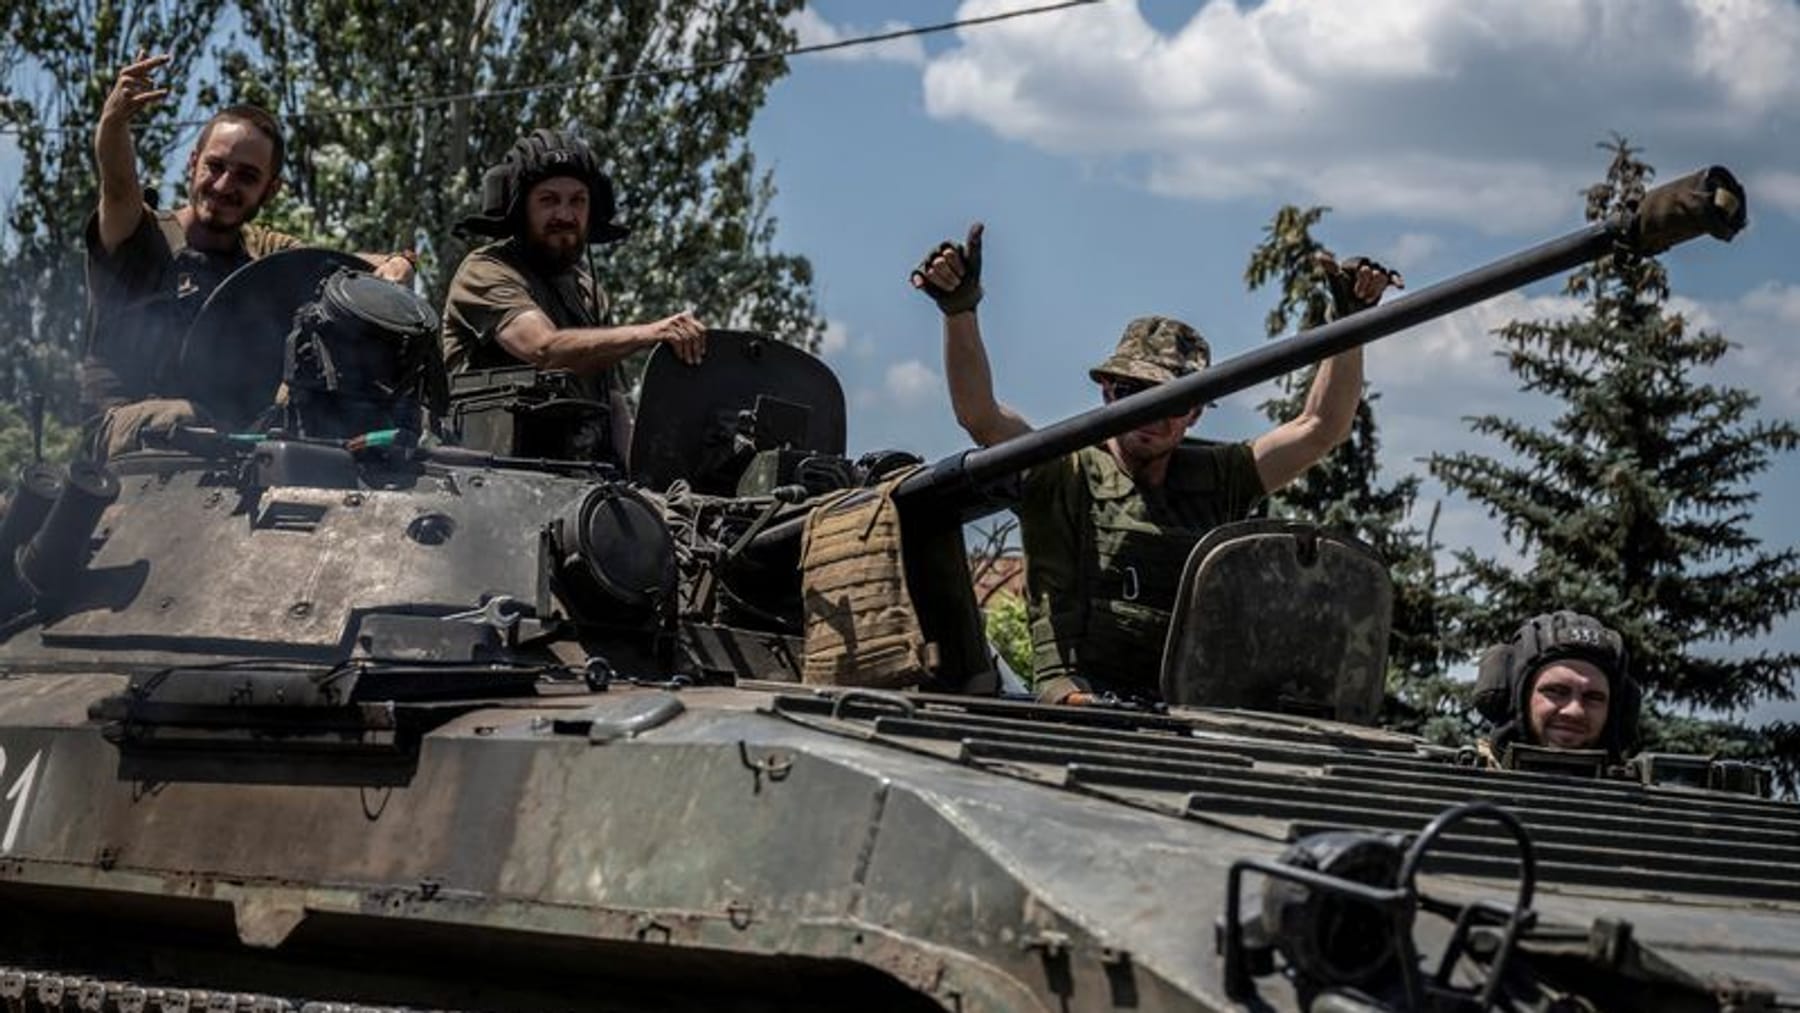 Notizie sulla guerra in Ucraina |  Un generale russo sarebbe stato ucciso in un attacco missilistico